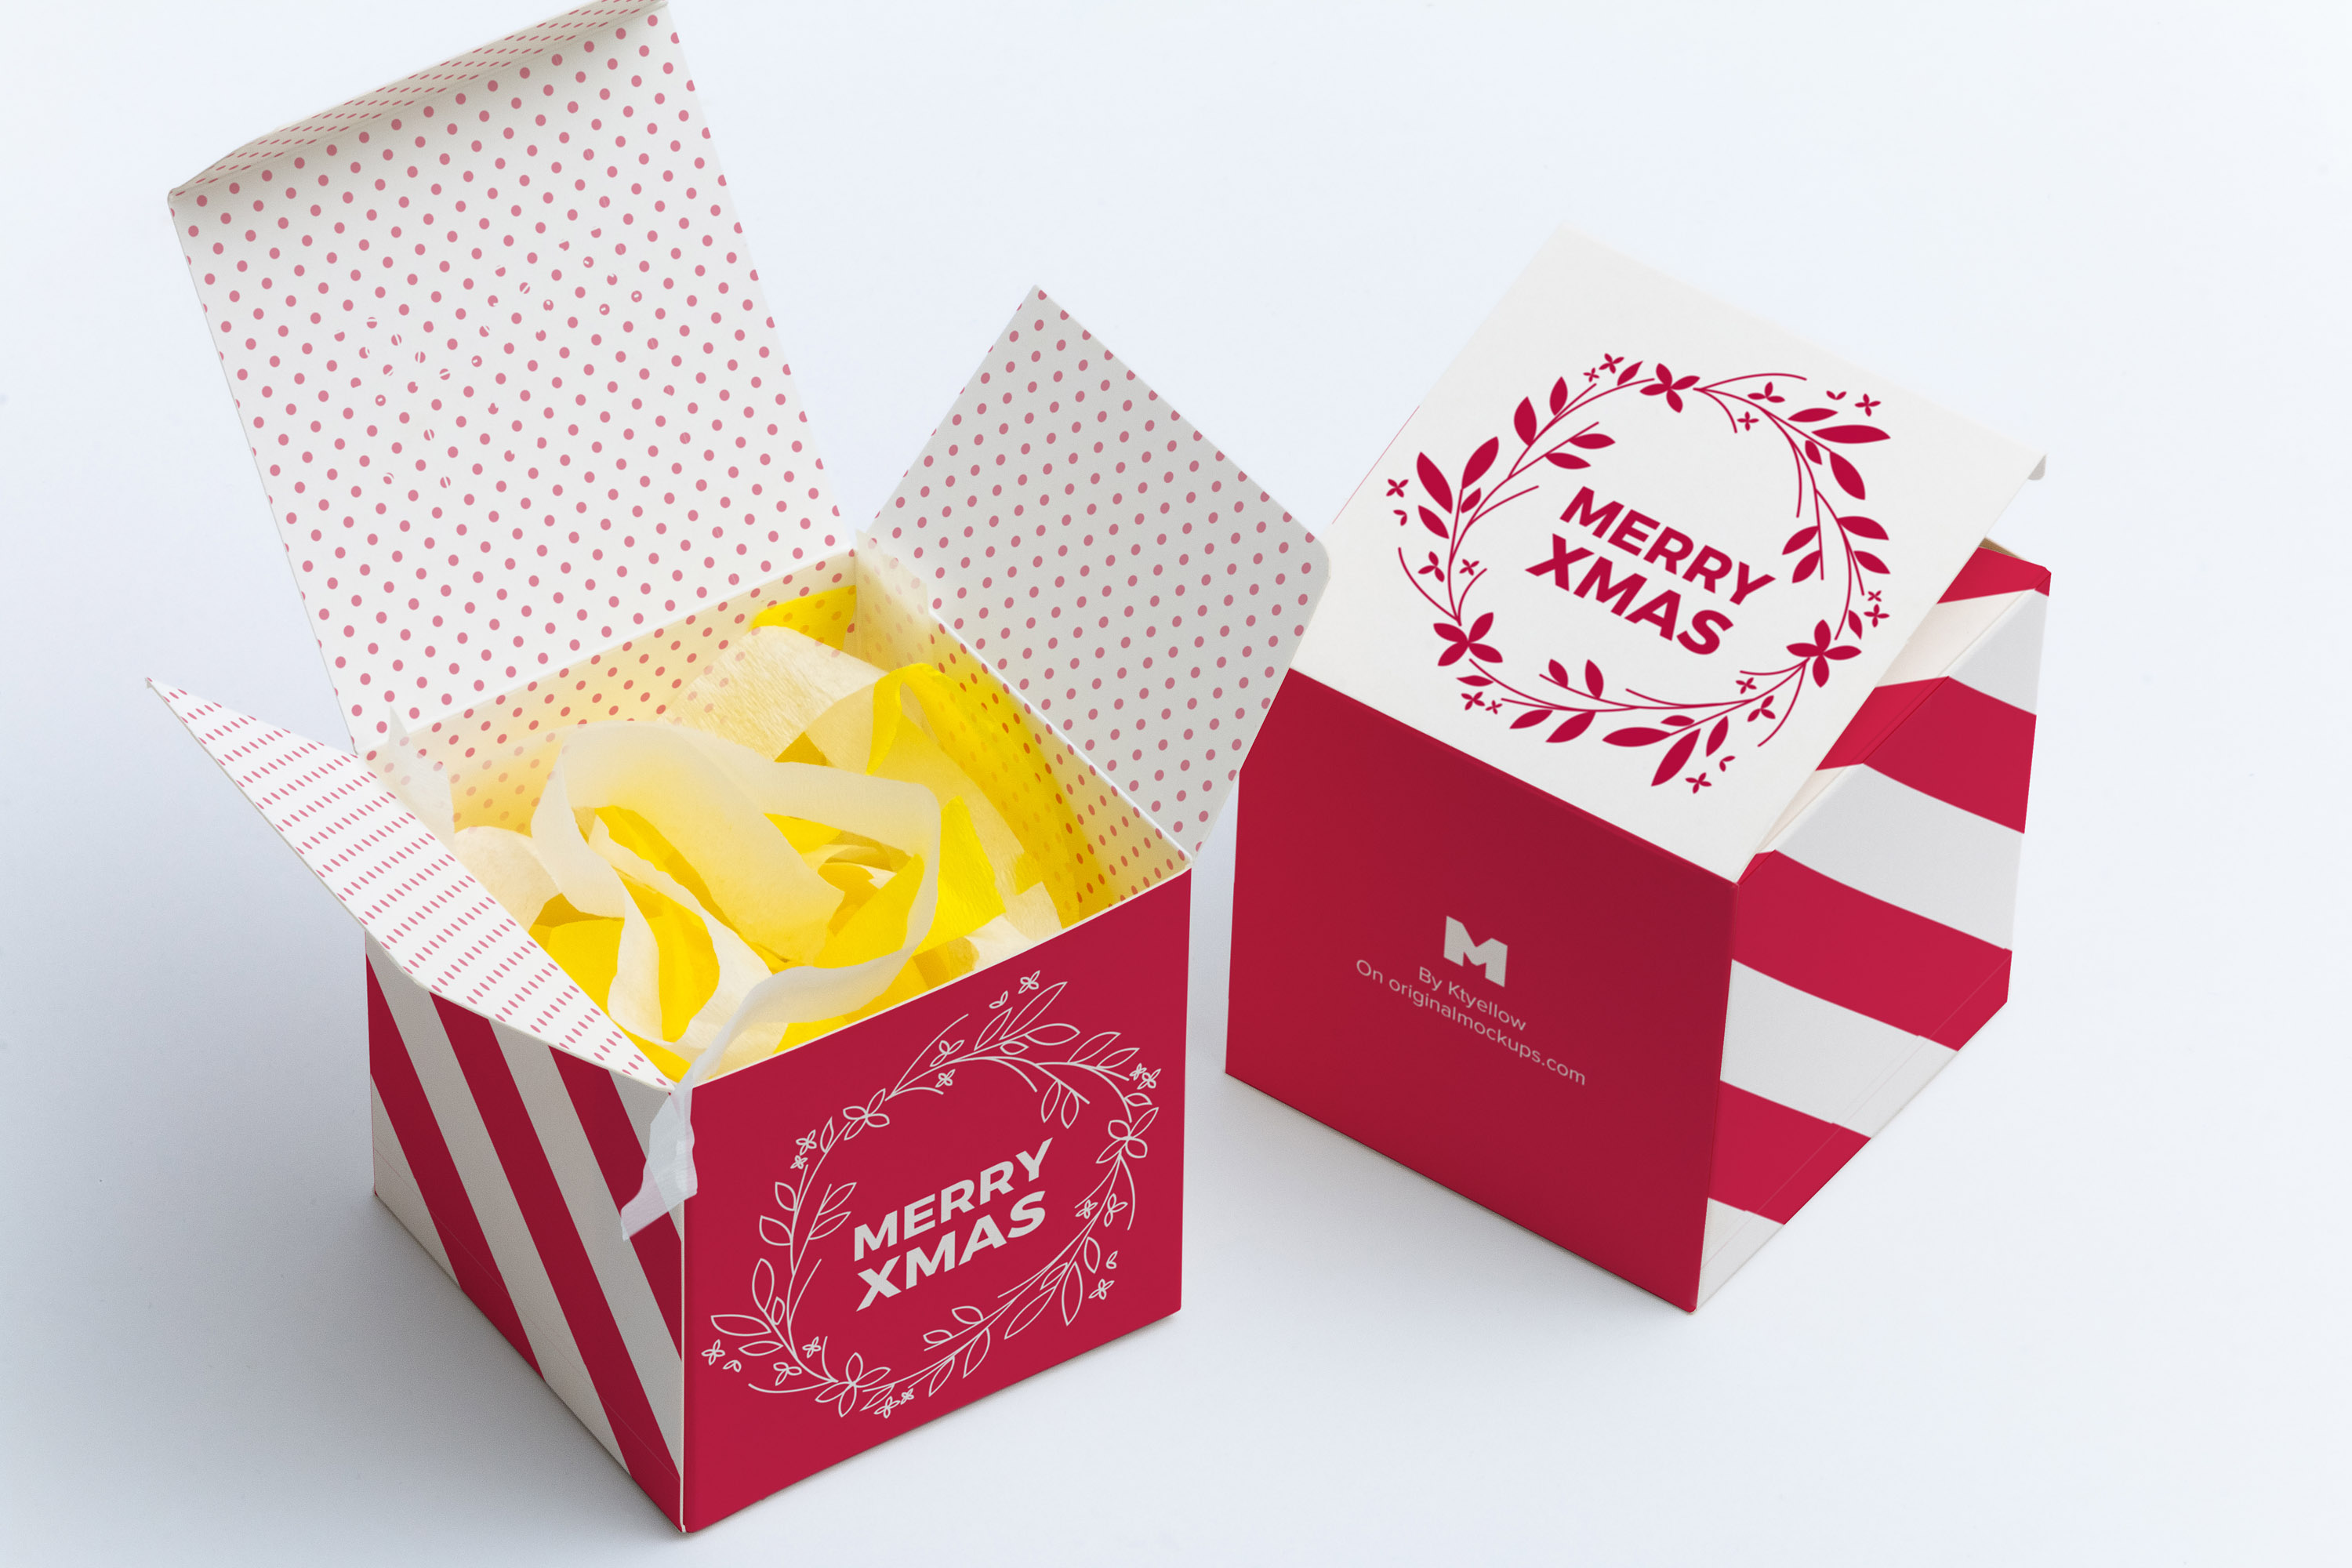 软纸立方体礼品盒产品包装盒设计样机01 Soft Paper Cube Gift Box Mockup 01插图